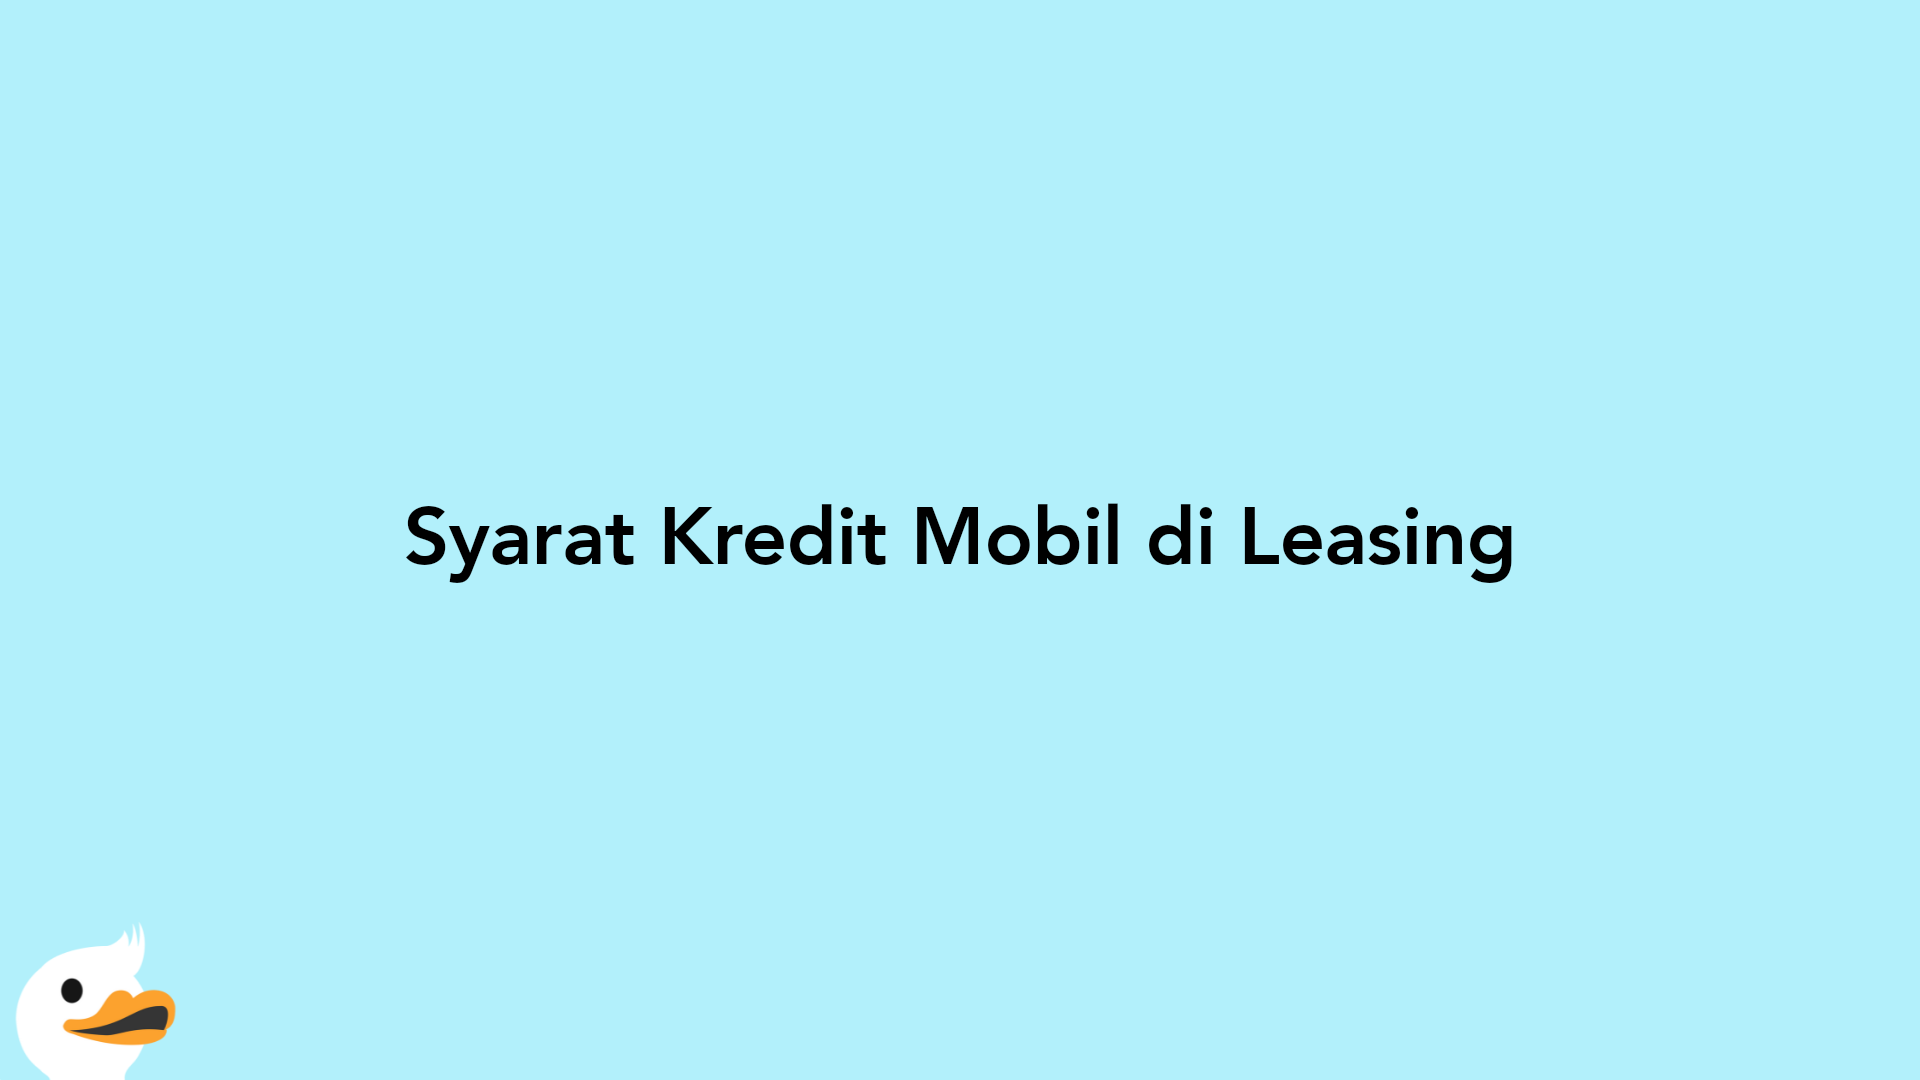 Syarat Kredit Mobil di Leasing